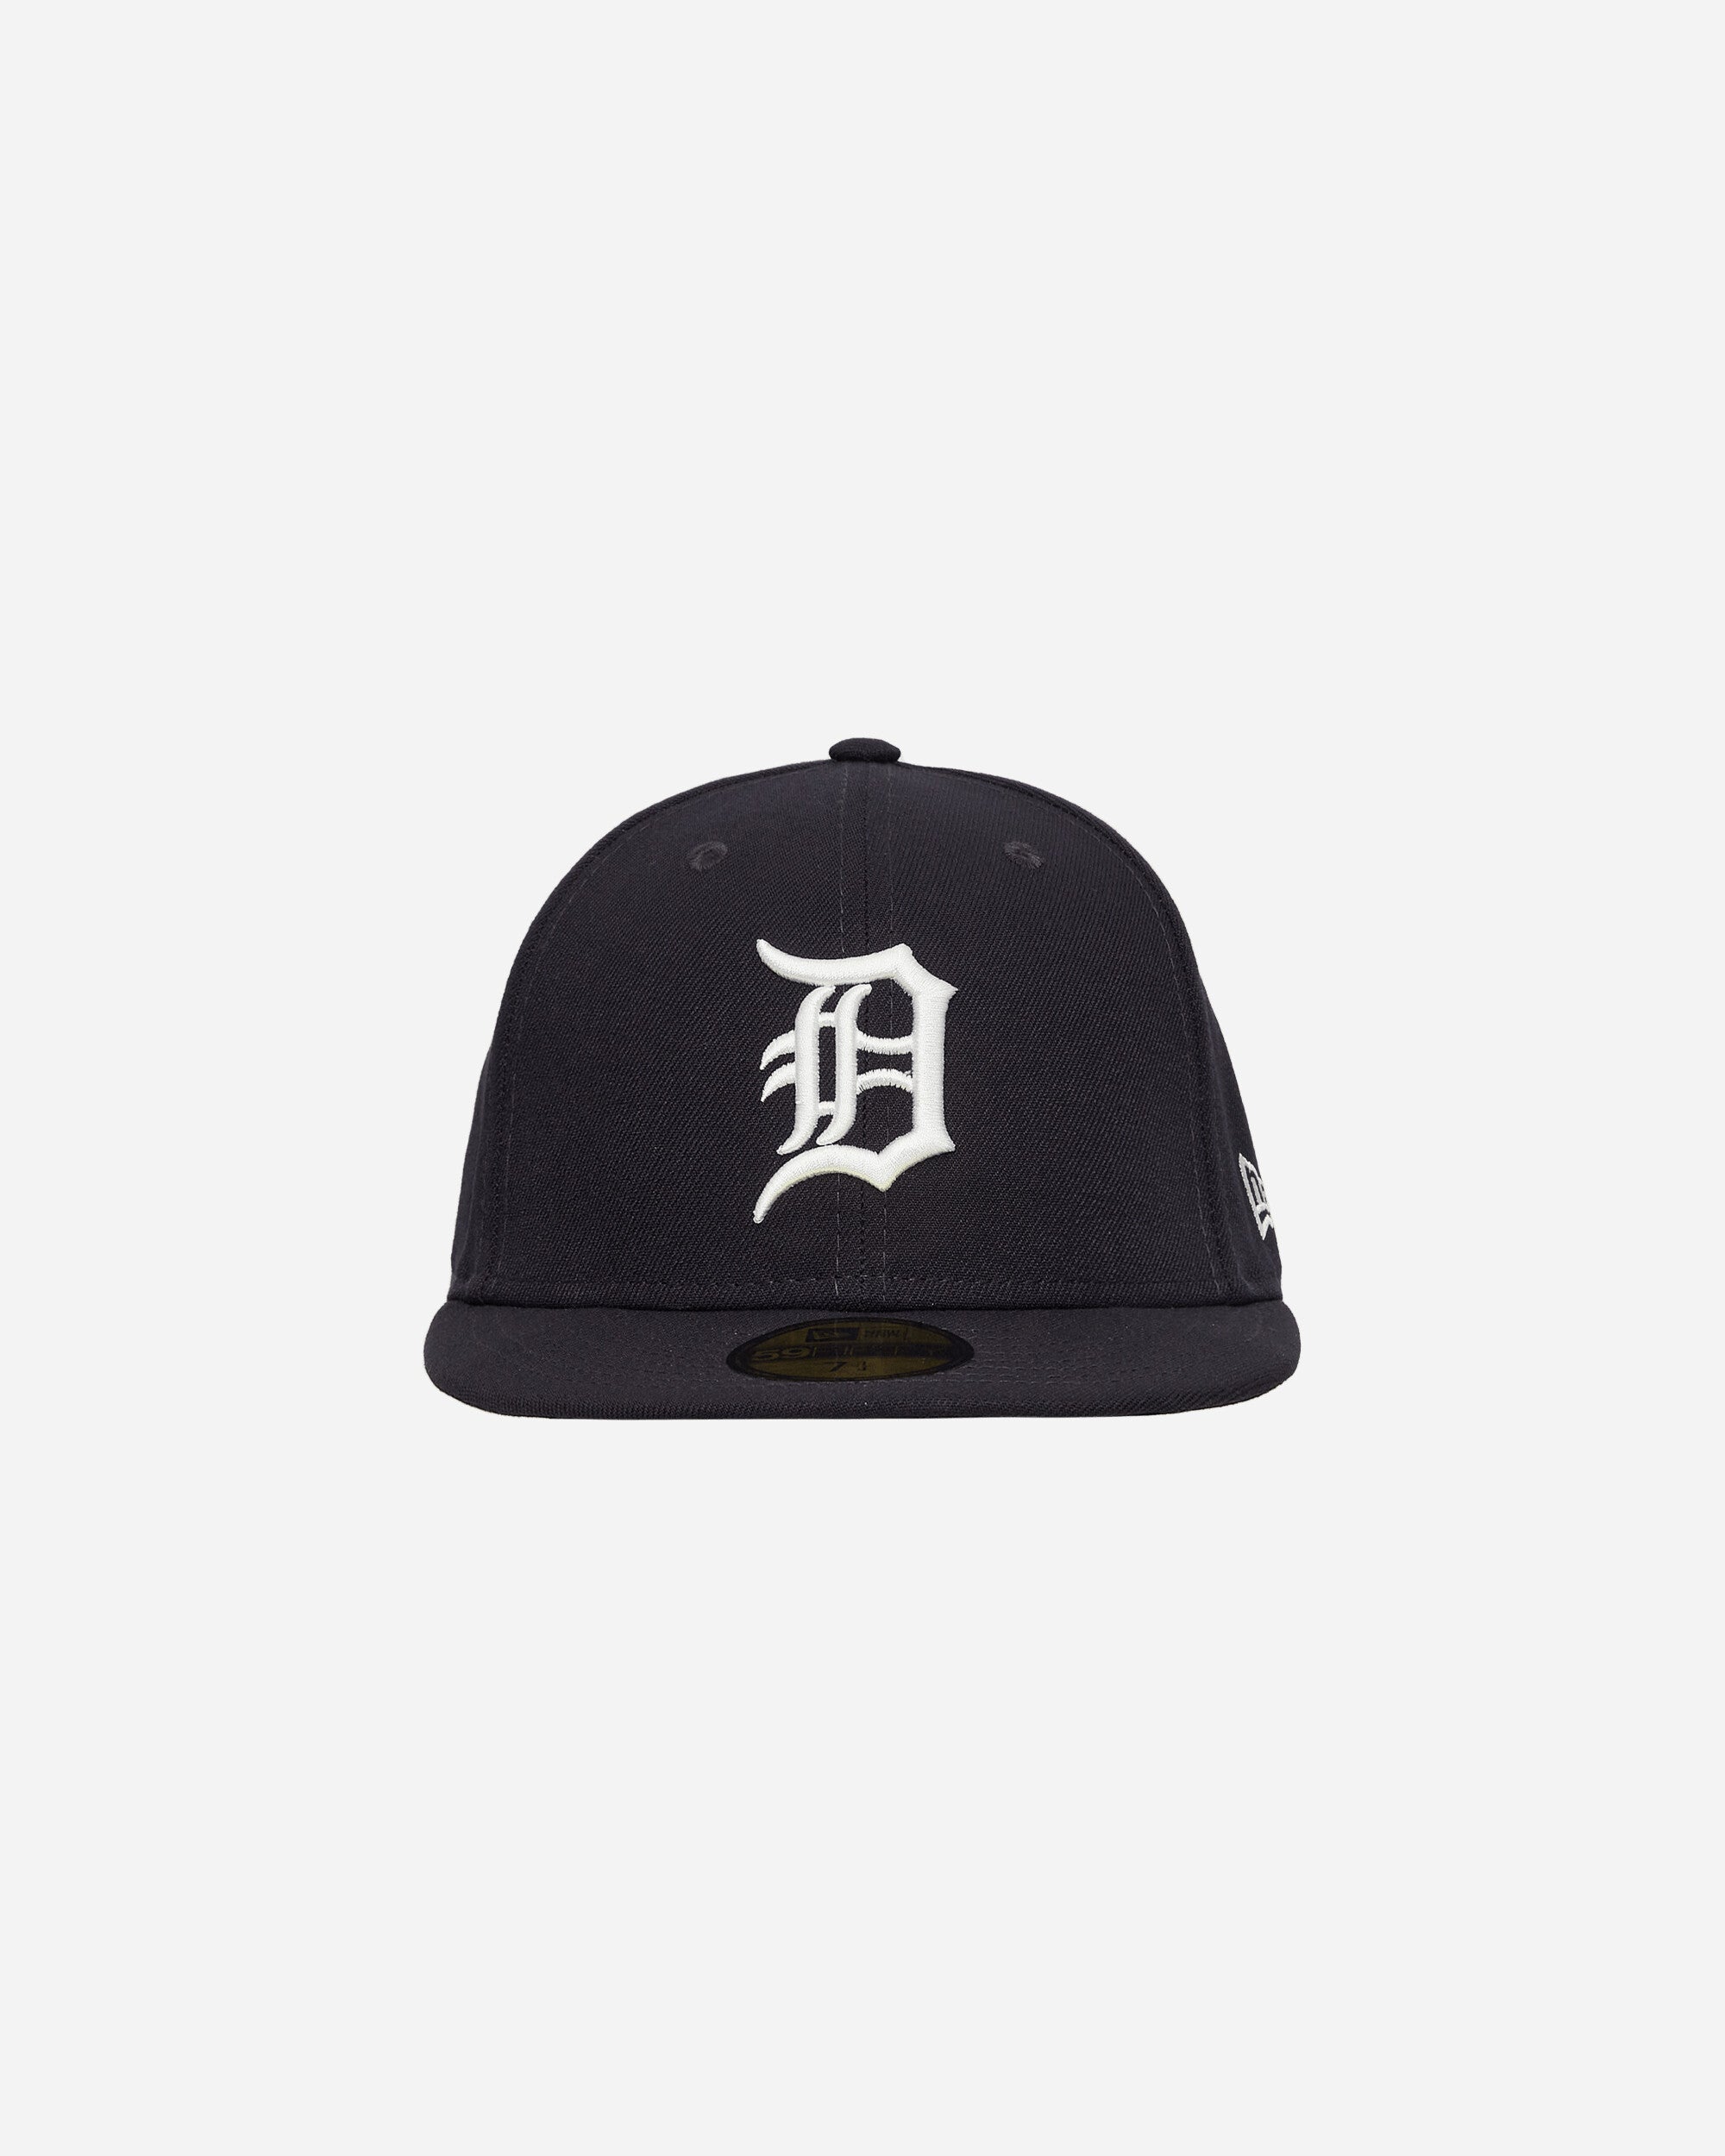 New Era 59Fifty Detroit Tigers Detroit Tigers Hats Caps 12572844 001